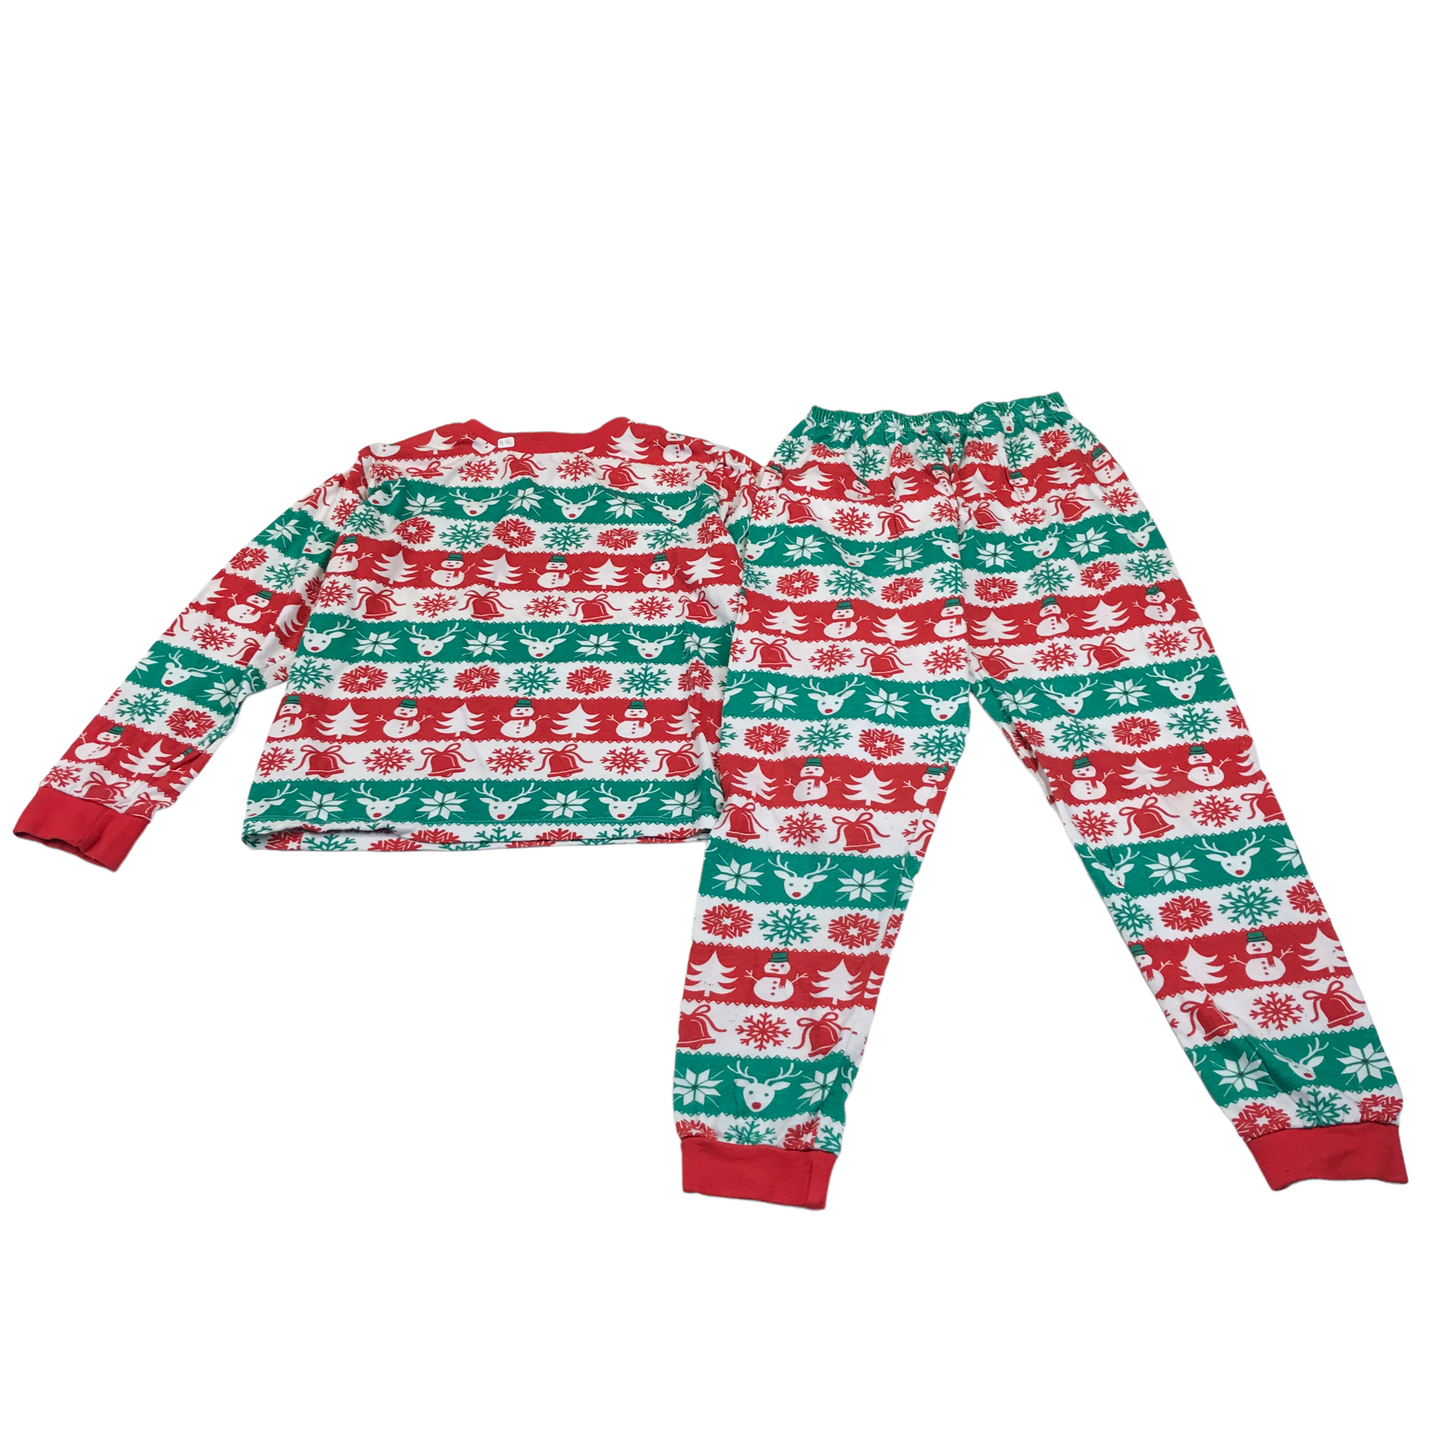 KIDS Green and Red Christmas Pyjama Set Age 9